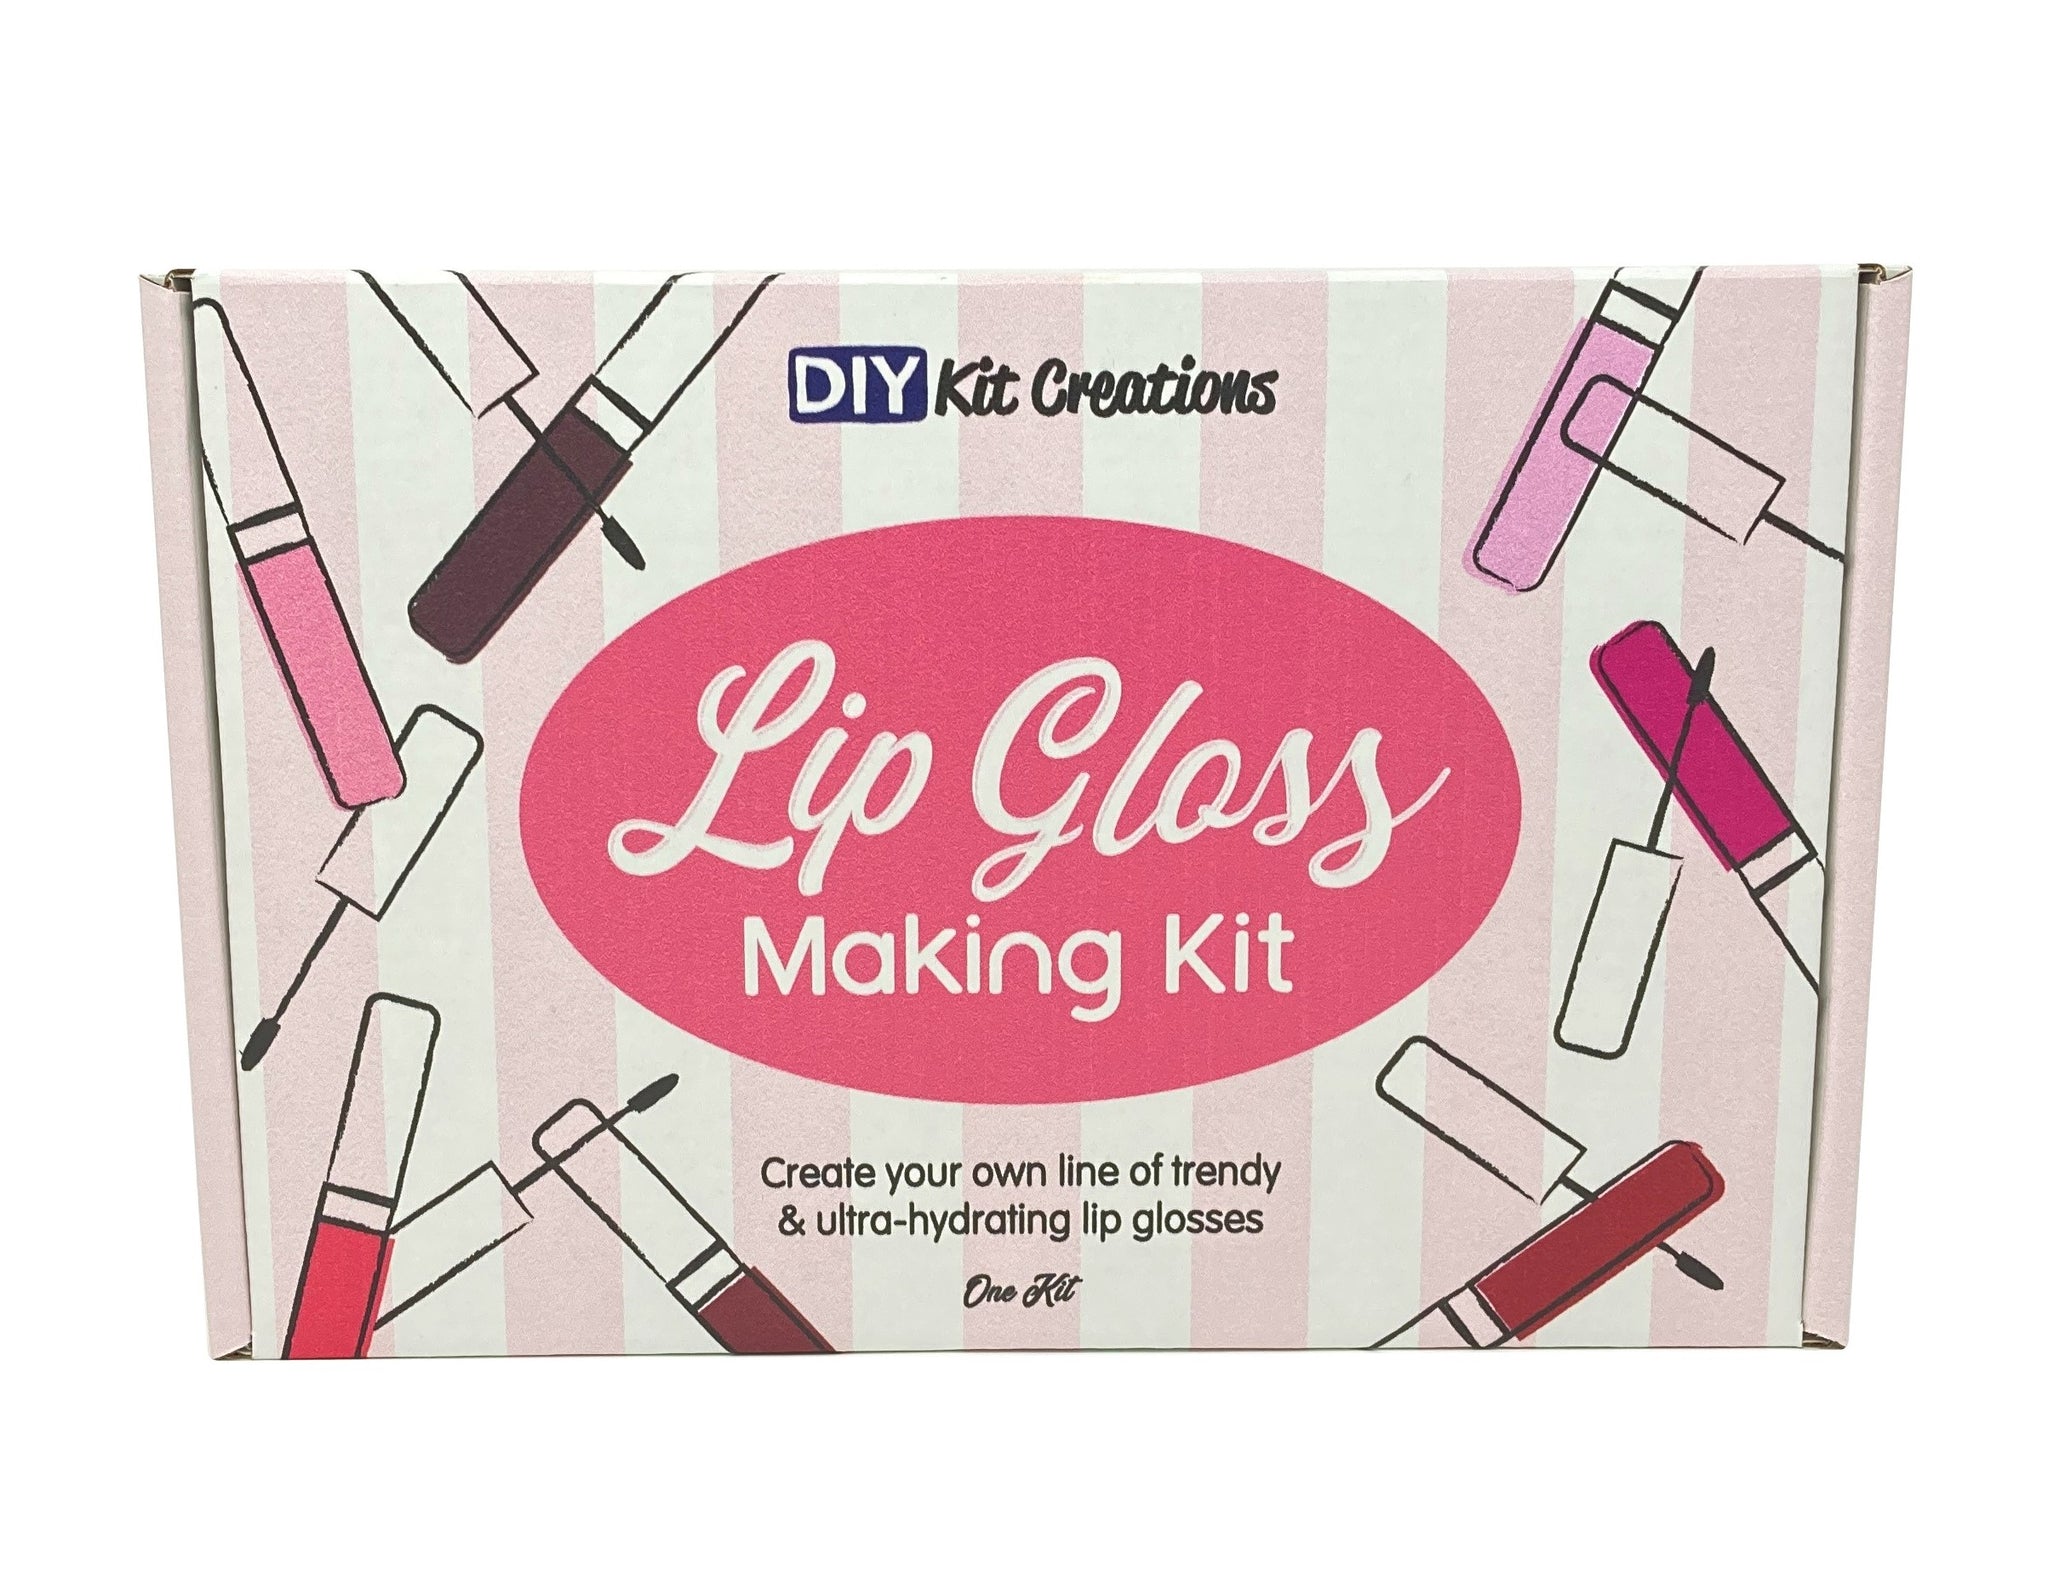 MOCIKE DIY lip gloss making kit for Girl Gifts - Make Your Own Lip Gloss